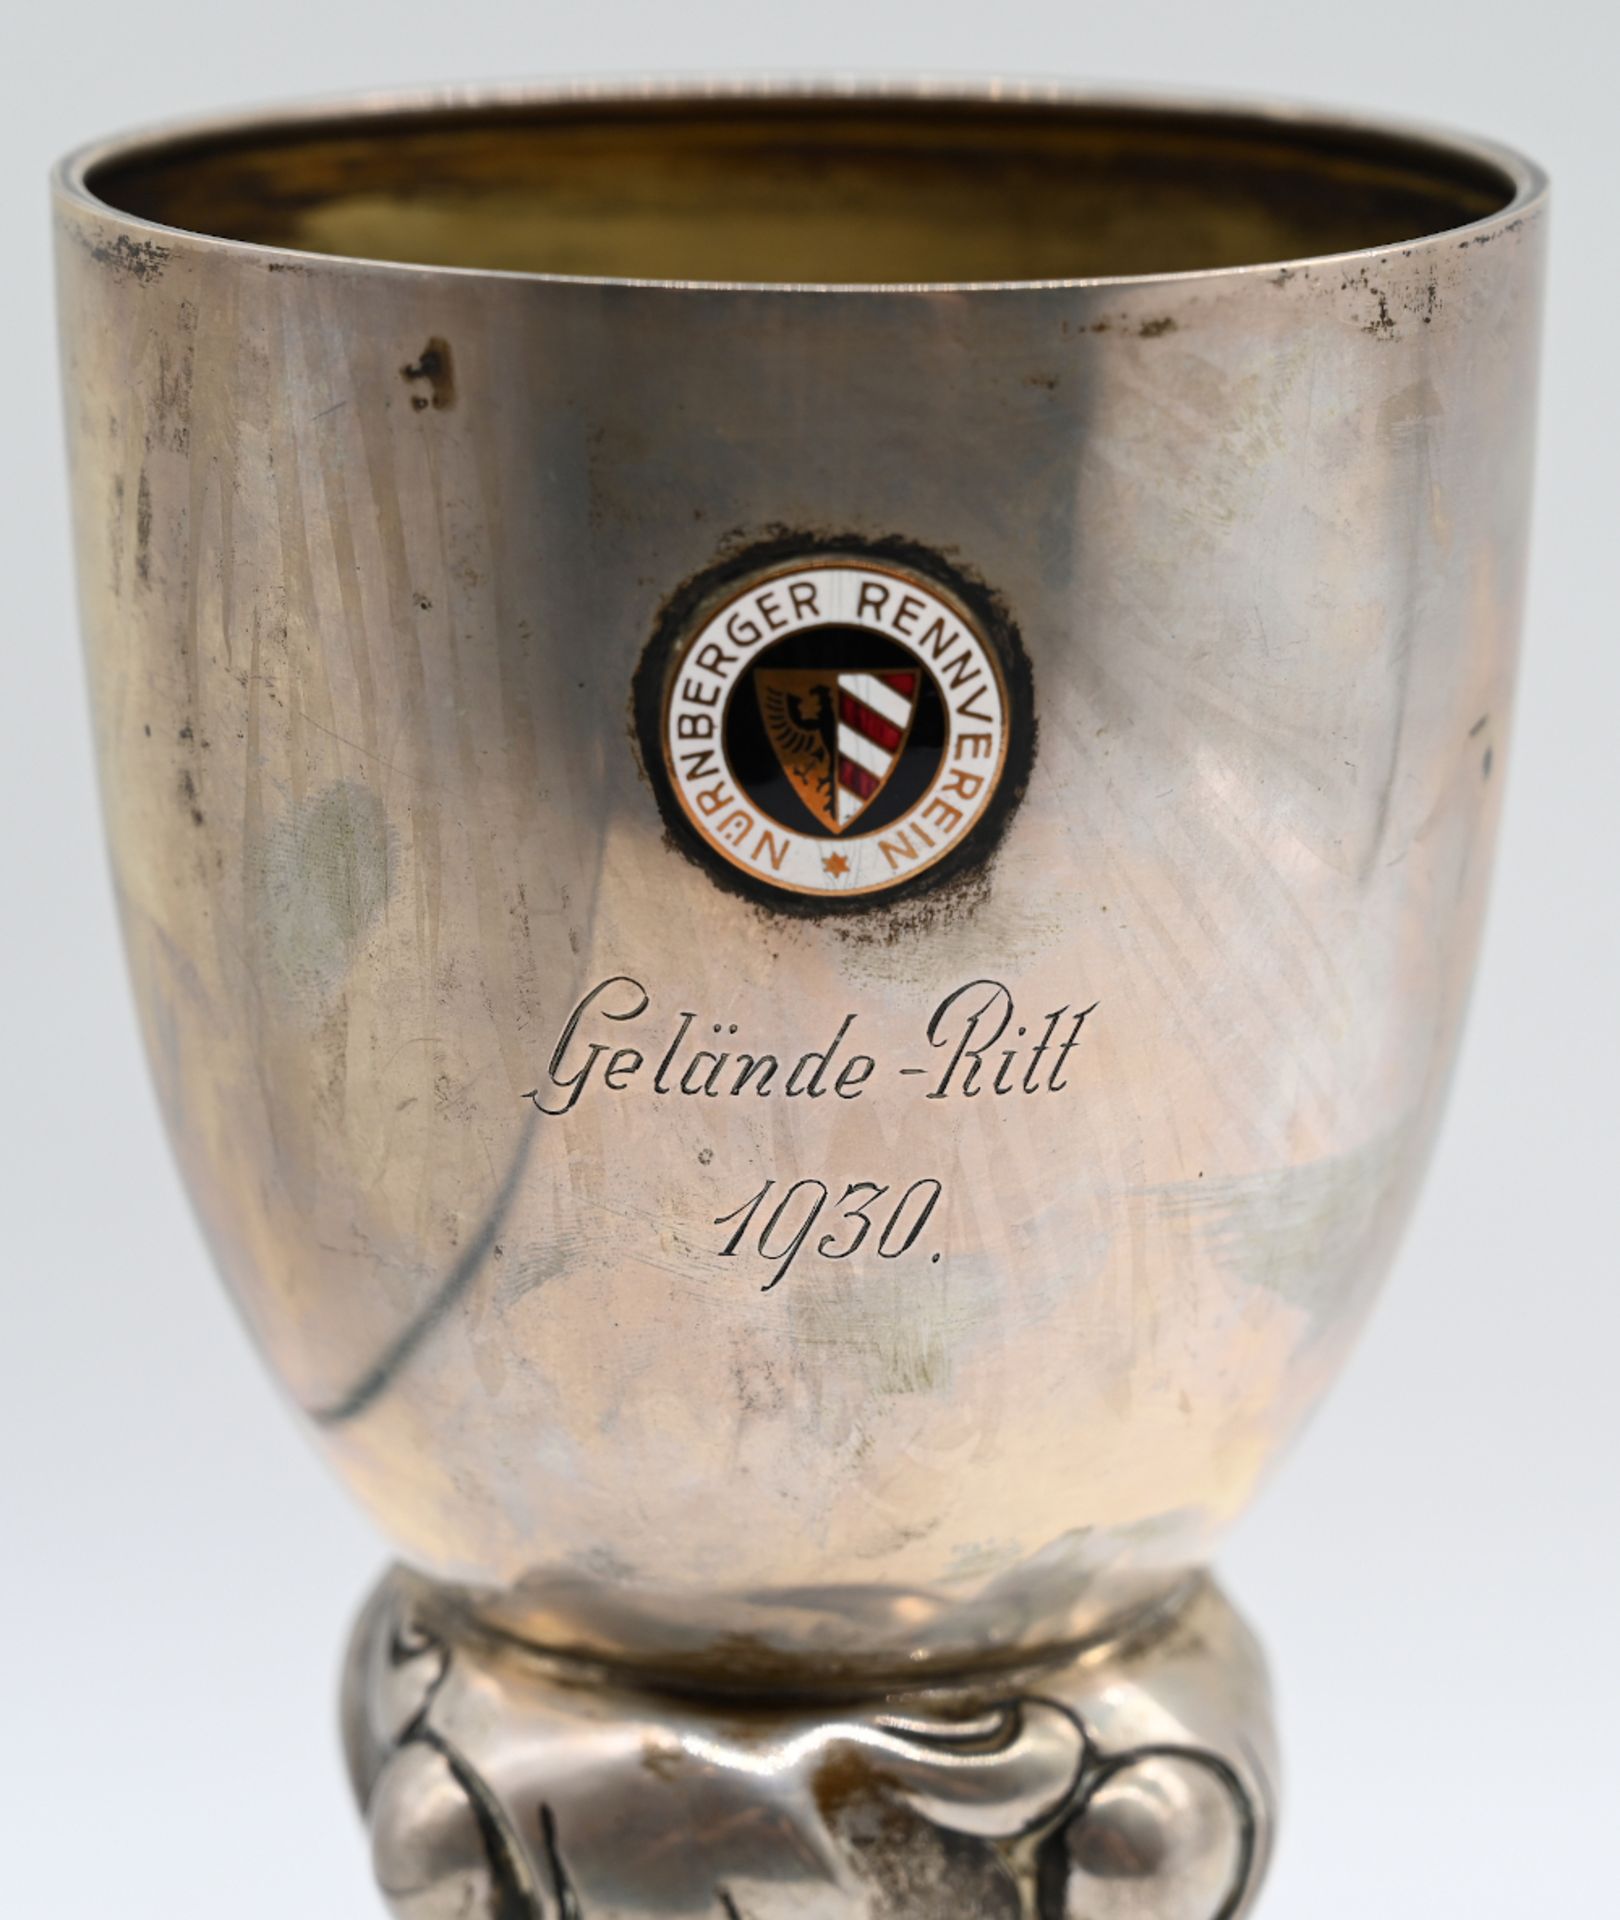 1 Pokal Silber 800 "Nürnberger Rennverein Gelände-Ritt 1930" Mittelstück verziert, H ca. 22cm, - Image 2 of 2